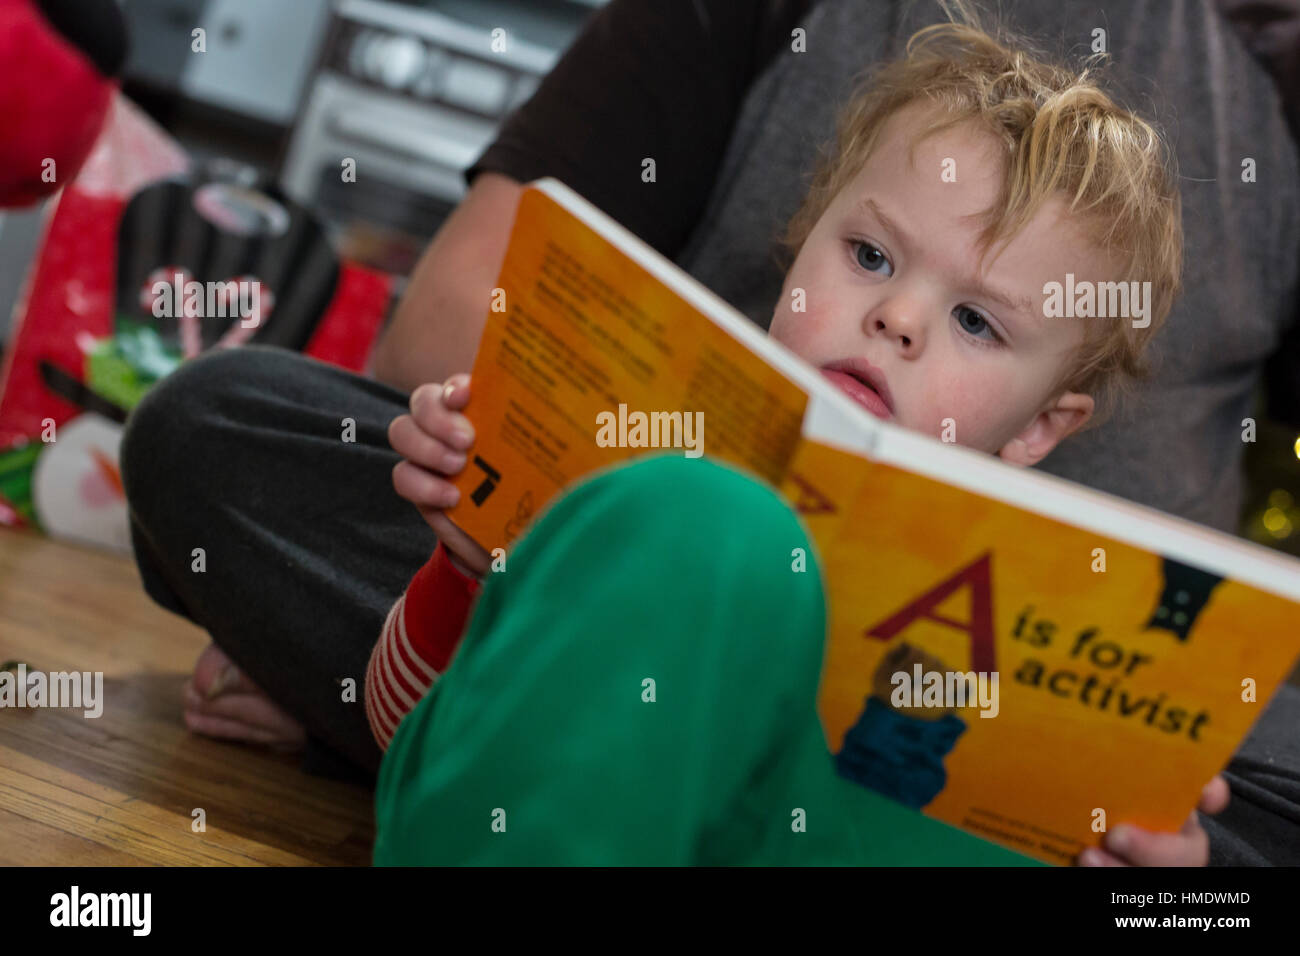 Denver, Colorado - Adam Hjermstad Jr., 2 1/2, legge un libro, un è per attivista, che egli è stato dato per il Natale. Foto Stock